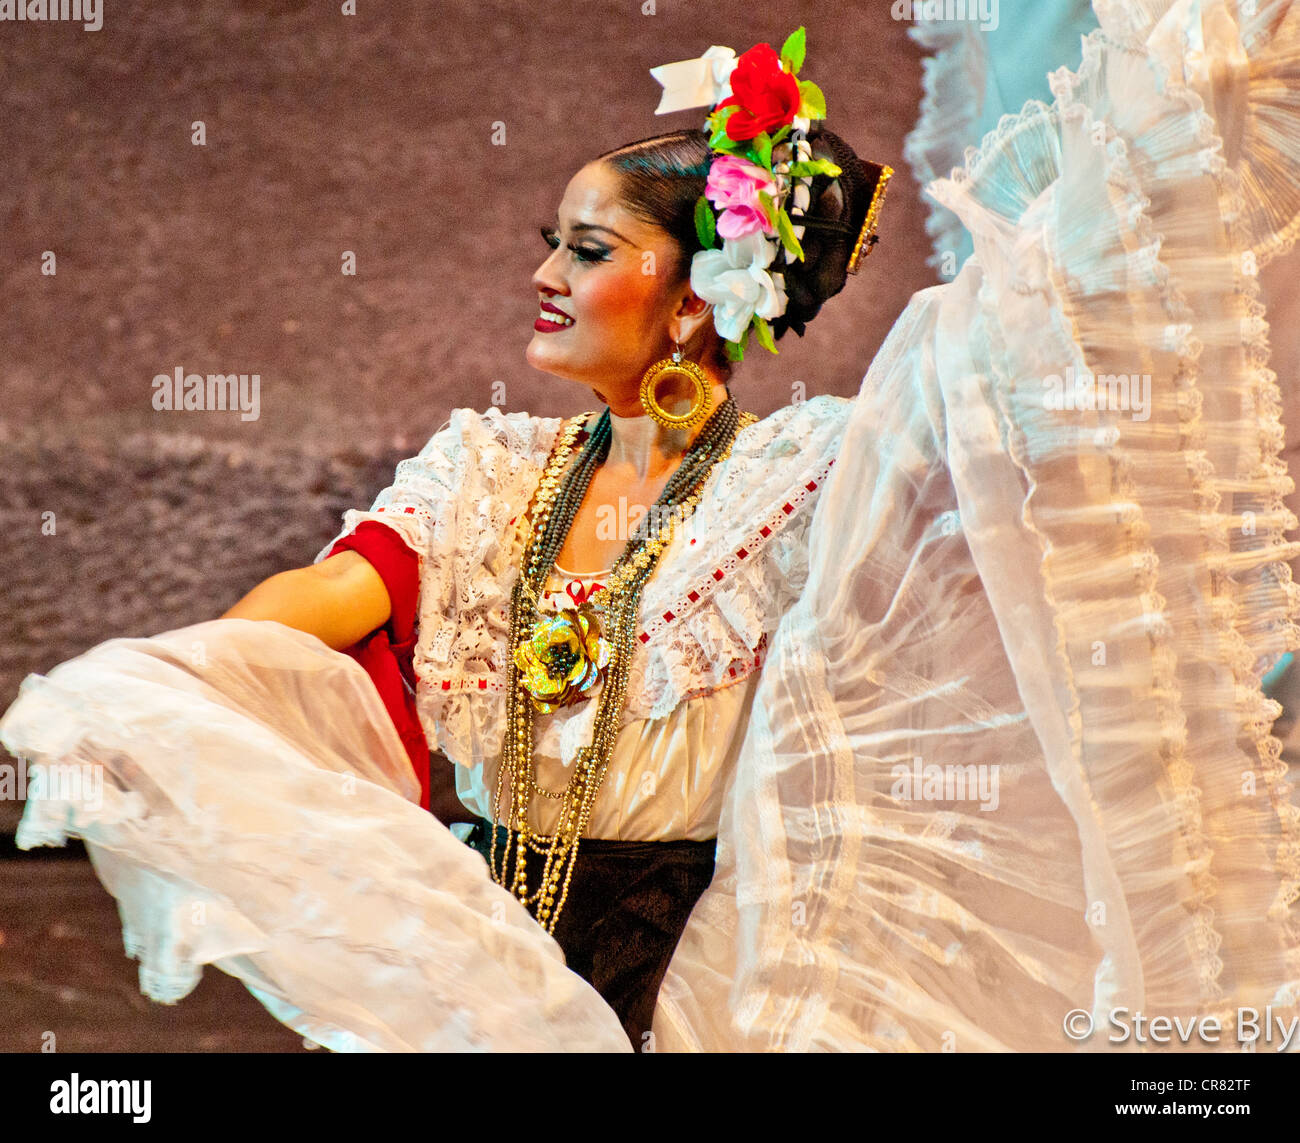 Belle danseuse Maya en costume traditionnel l'exécution d'une danse folklorique dans le parc Xcaret, Riviera Maya, Mexique Banque D'Images